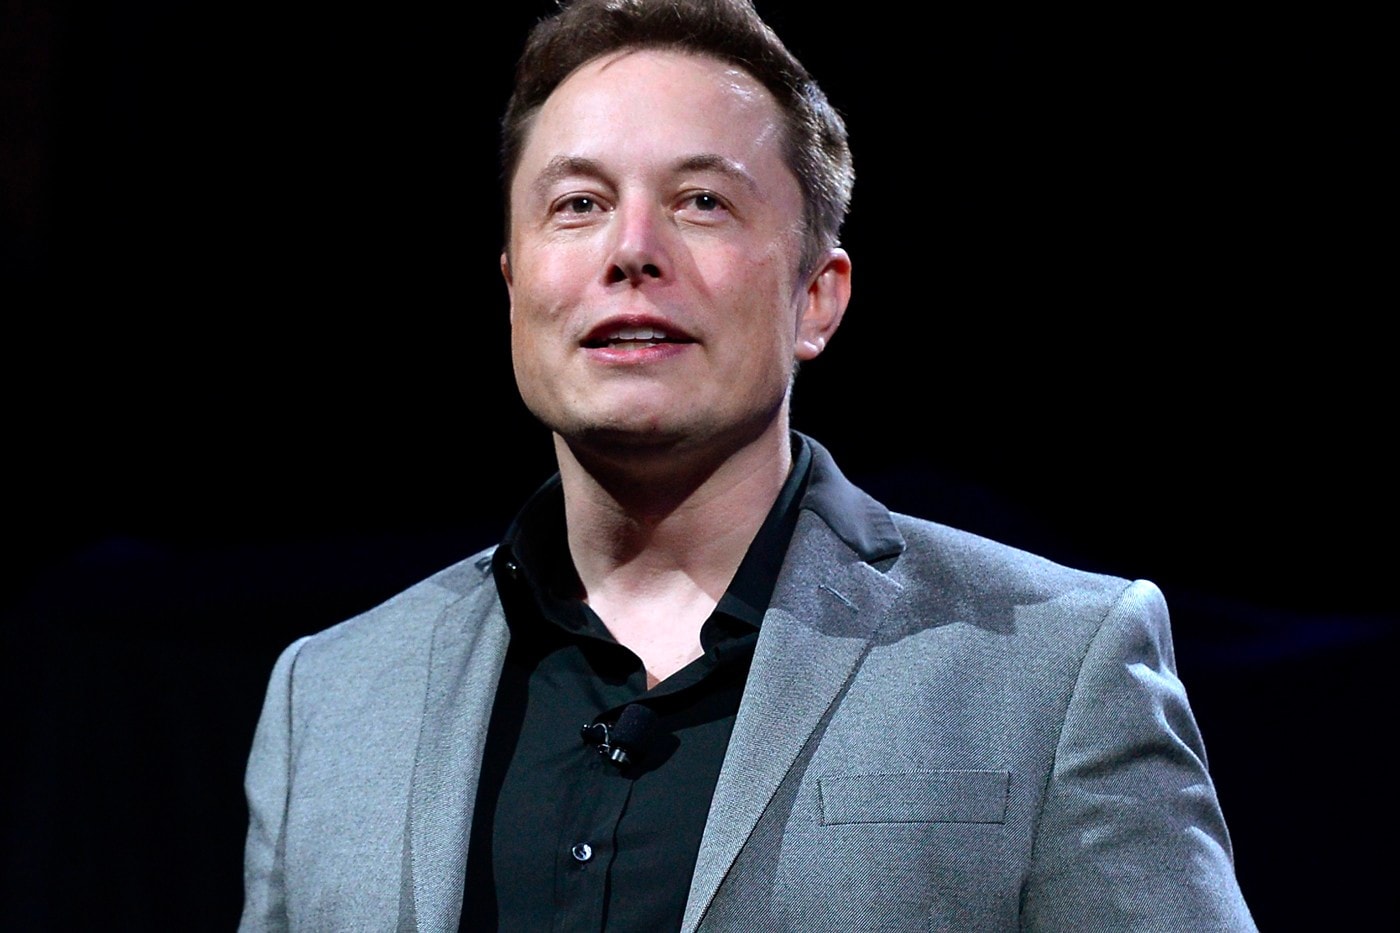 イーロン・マスクが世界2位の富豪に上り詰める Elon Musk bill gates richest man in the world Bloomberg index